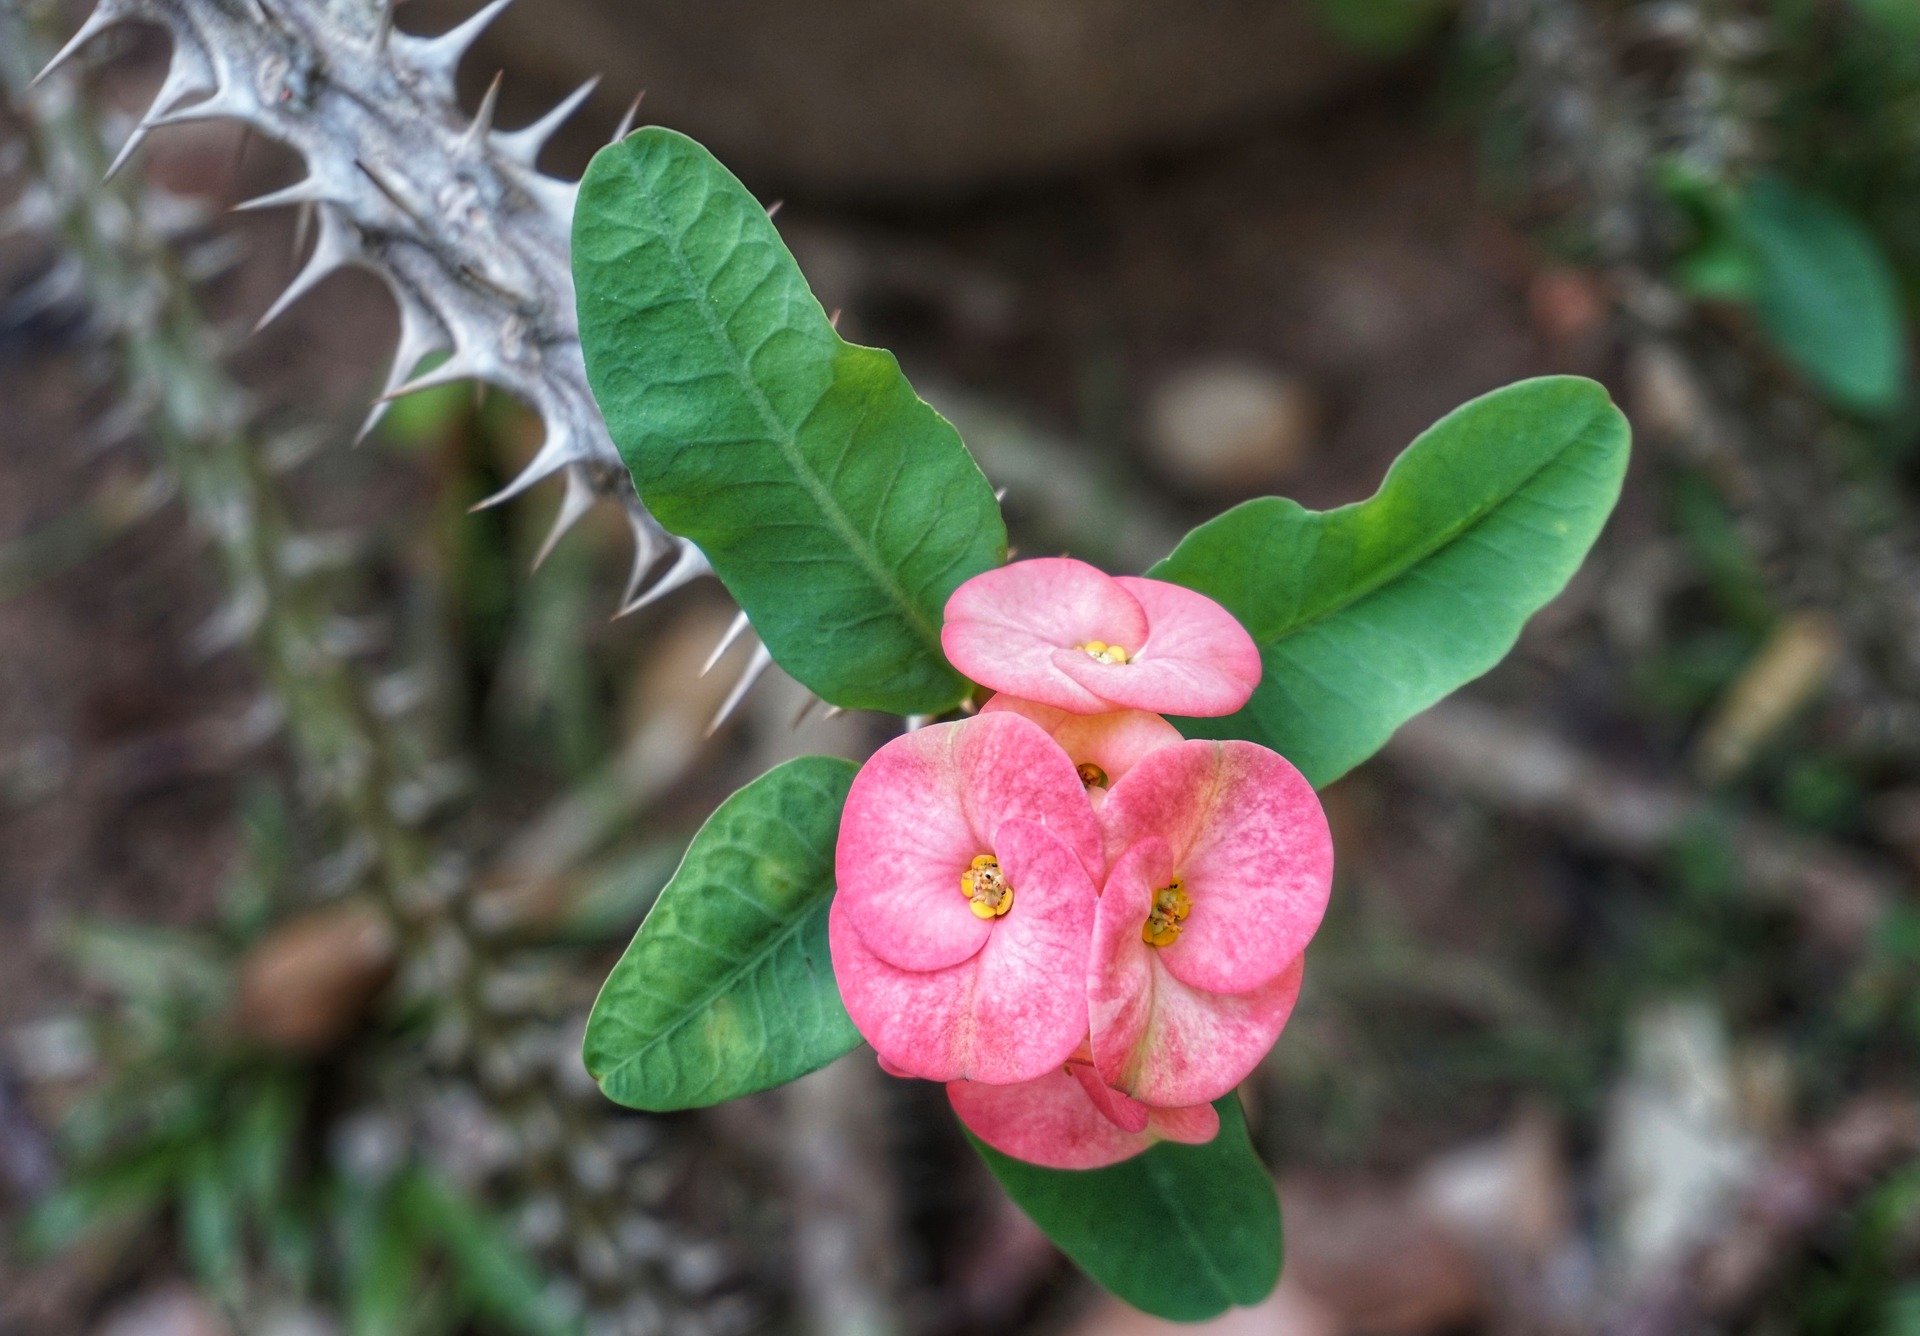 Розовый колючий цветок. Эуфорбия молочай. Молочай миля. Молочай миля (Euphorbia milii. Цветок молочай эуфорбия.